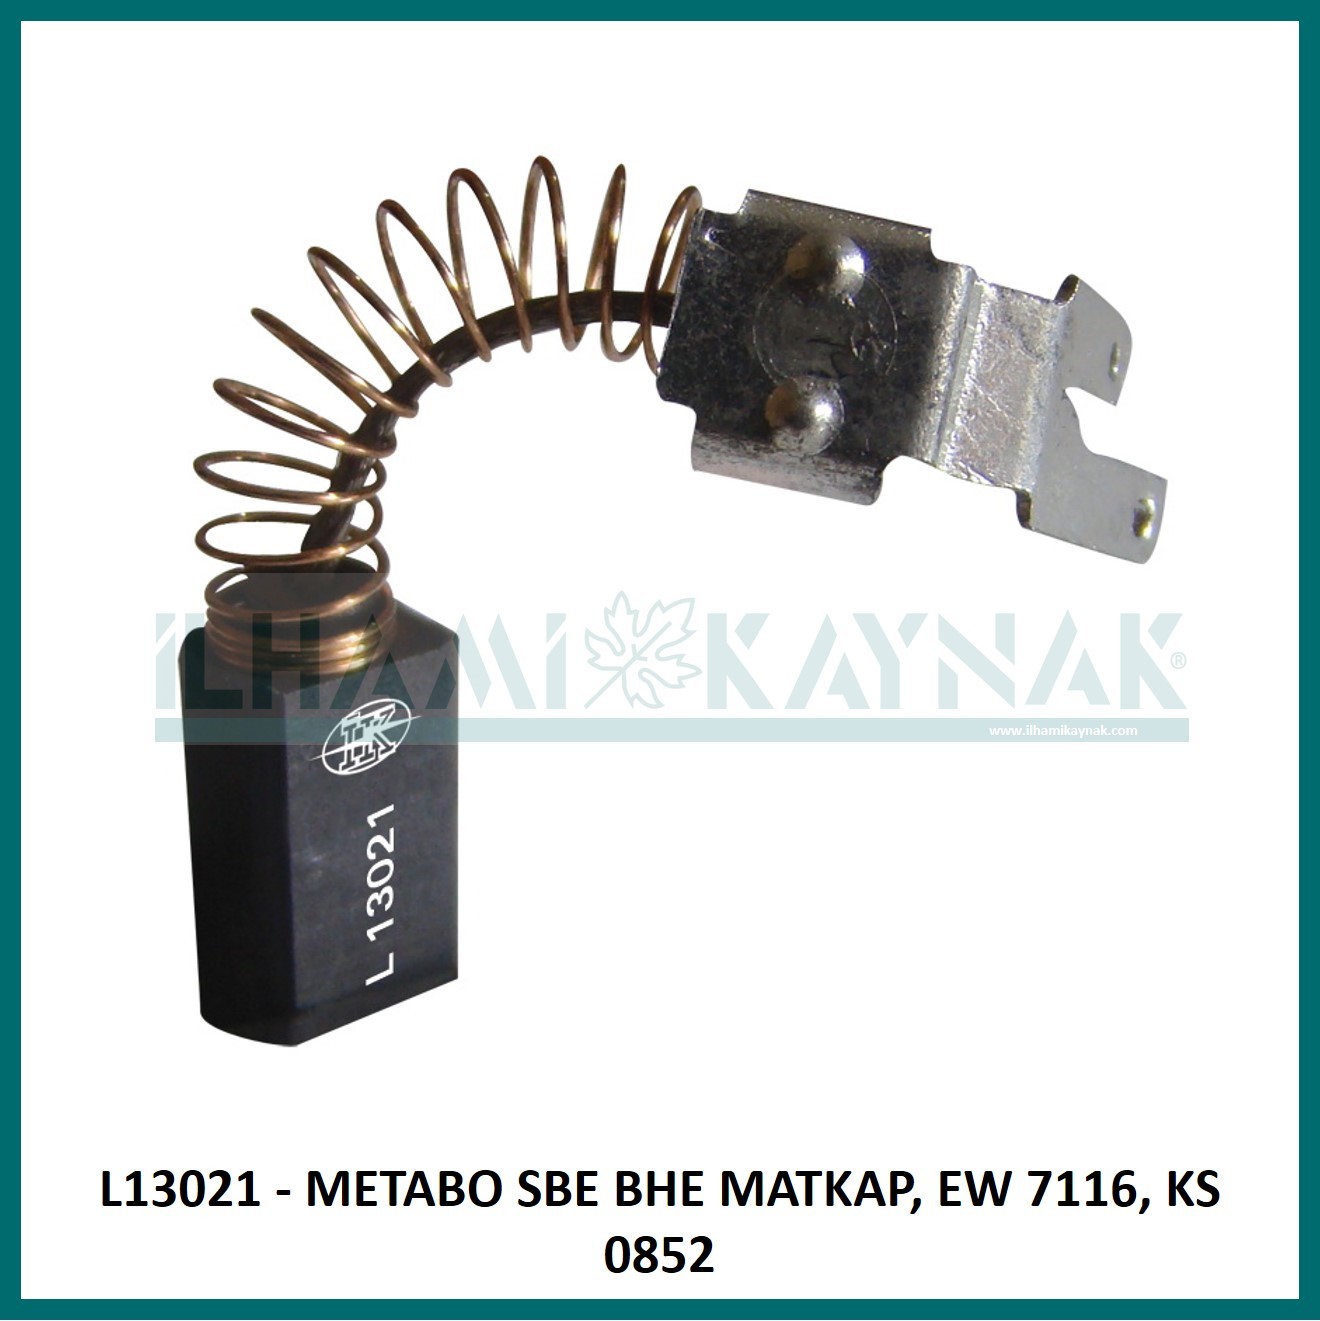 L13021 - METABO SBE BHE MATKAP, EW 7116, KS 0852 - 6,3*8*16 mm - 100 Adet